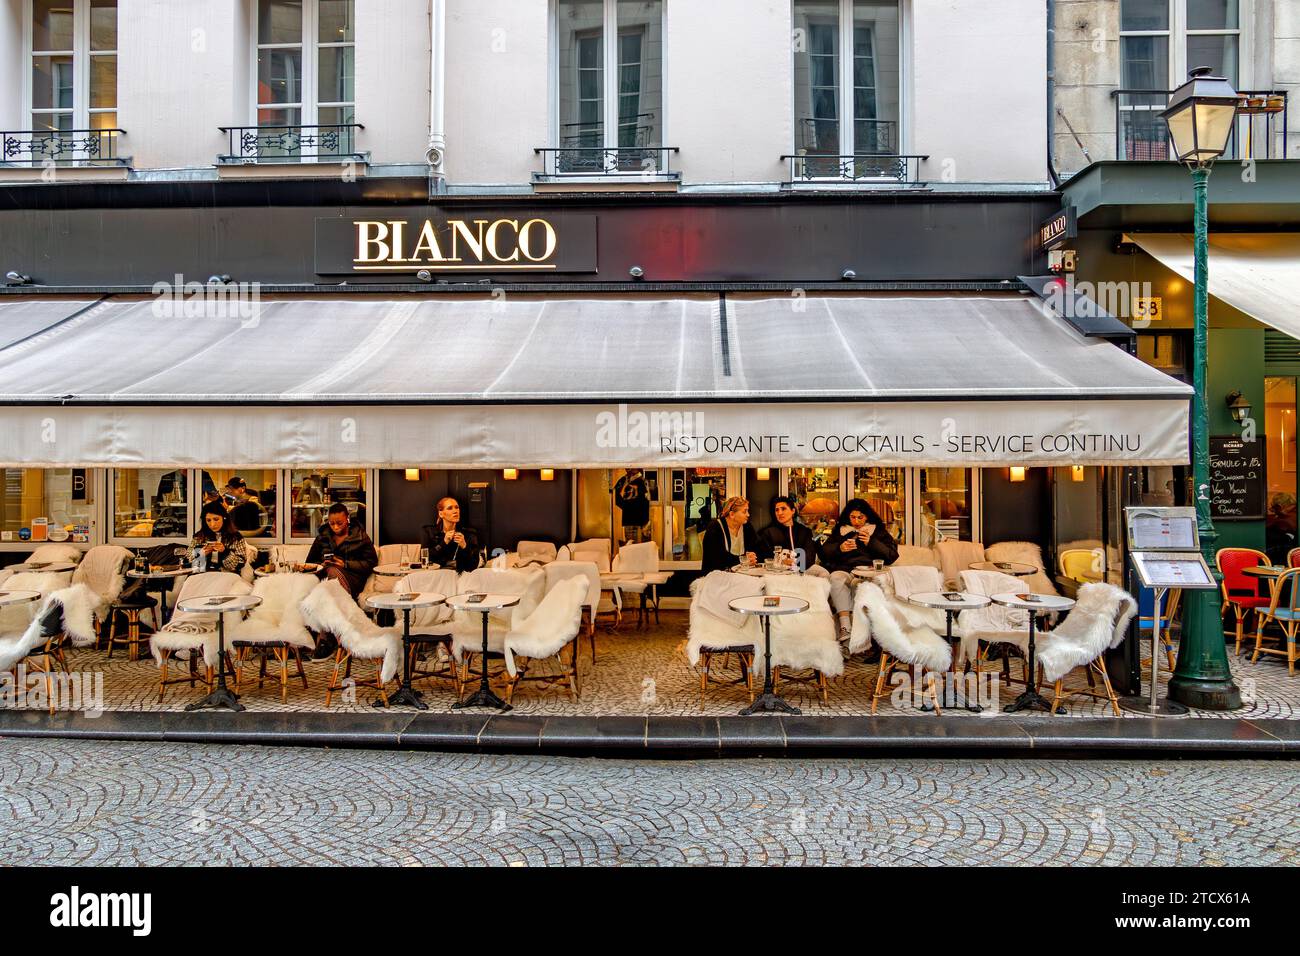 Les gens assis sur la terrasse extérieure de Bianco, un restaurant italien sur la rue Montorgueil, Paris, France Banque D'Images